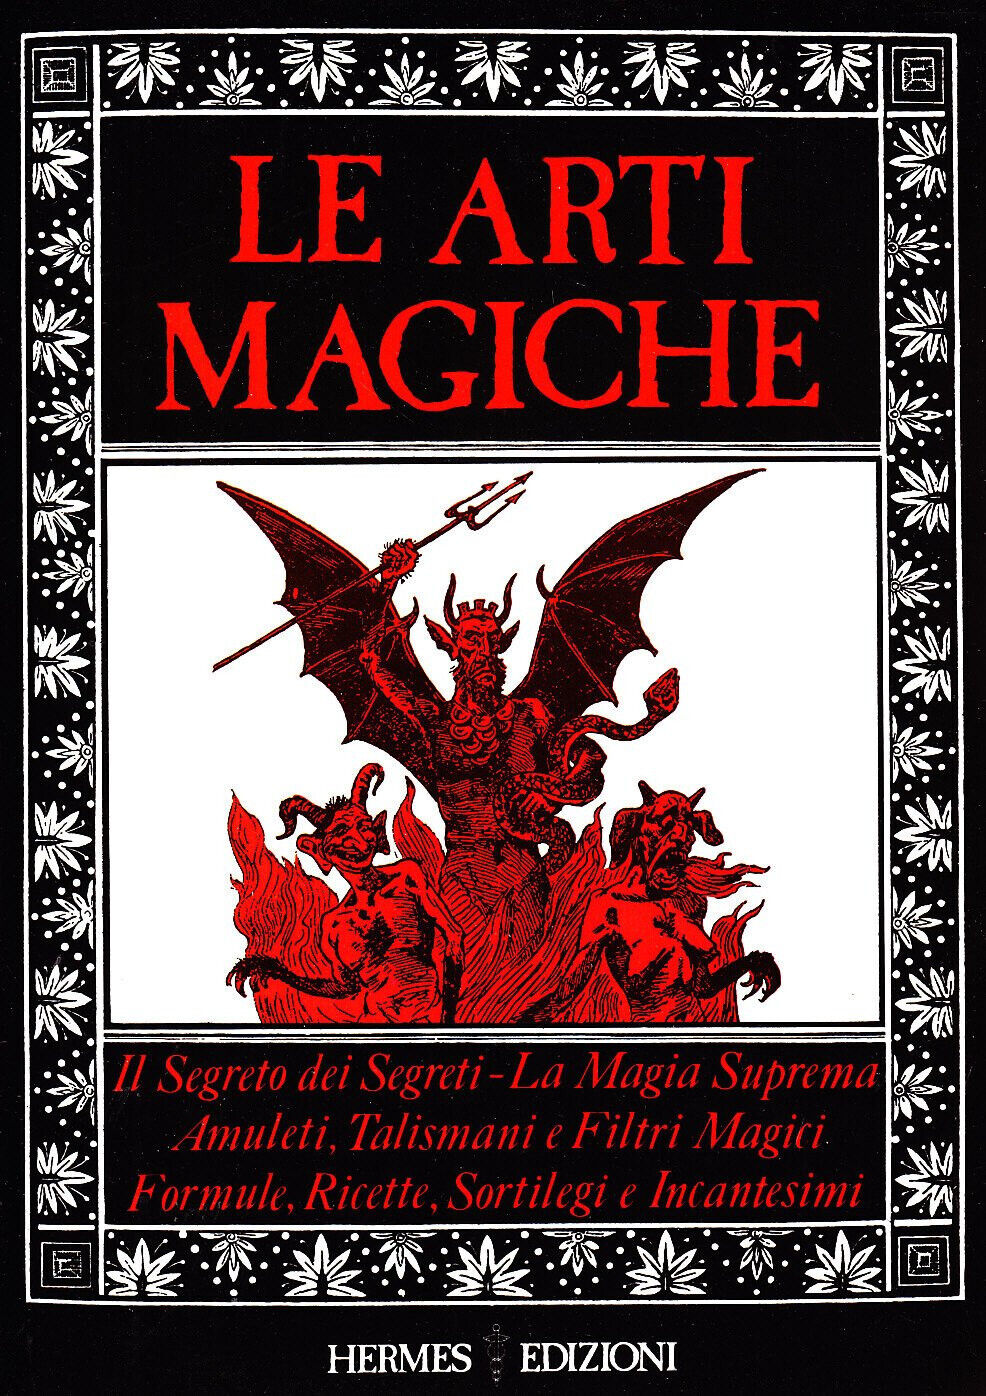 Le arti magiche - AA.VV. - Hermes, 1985